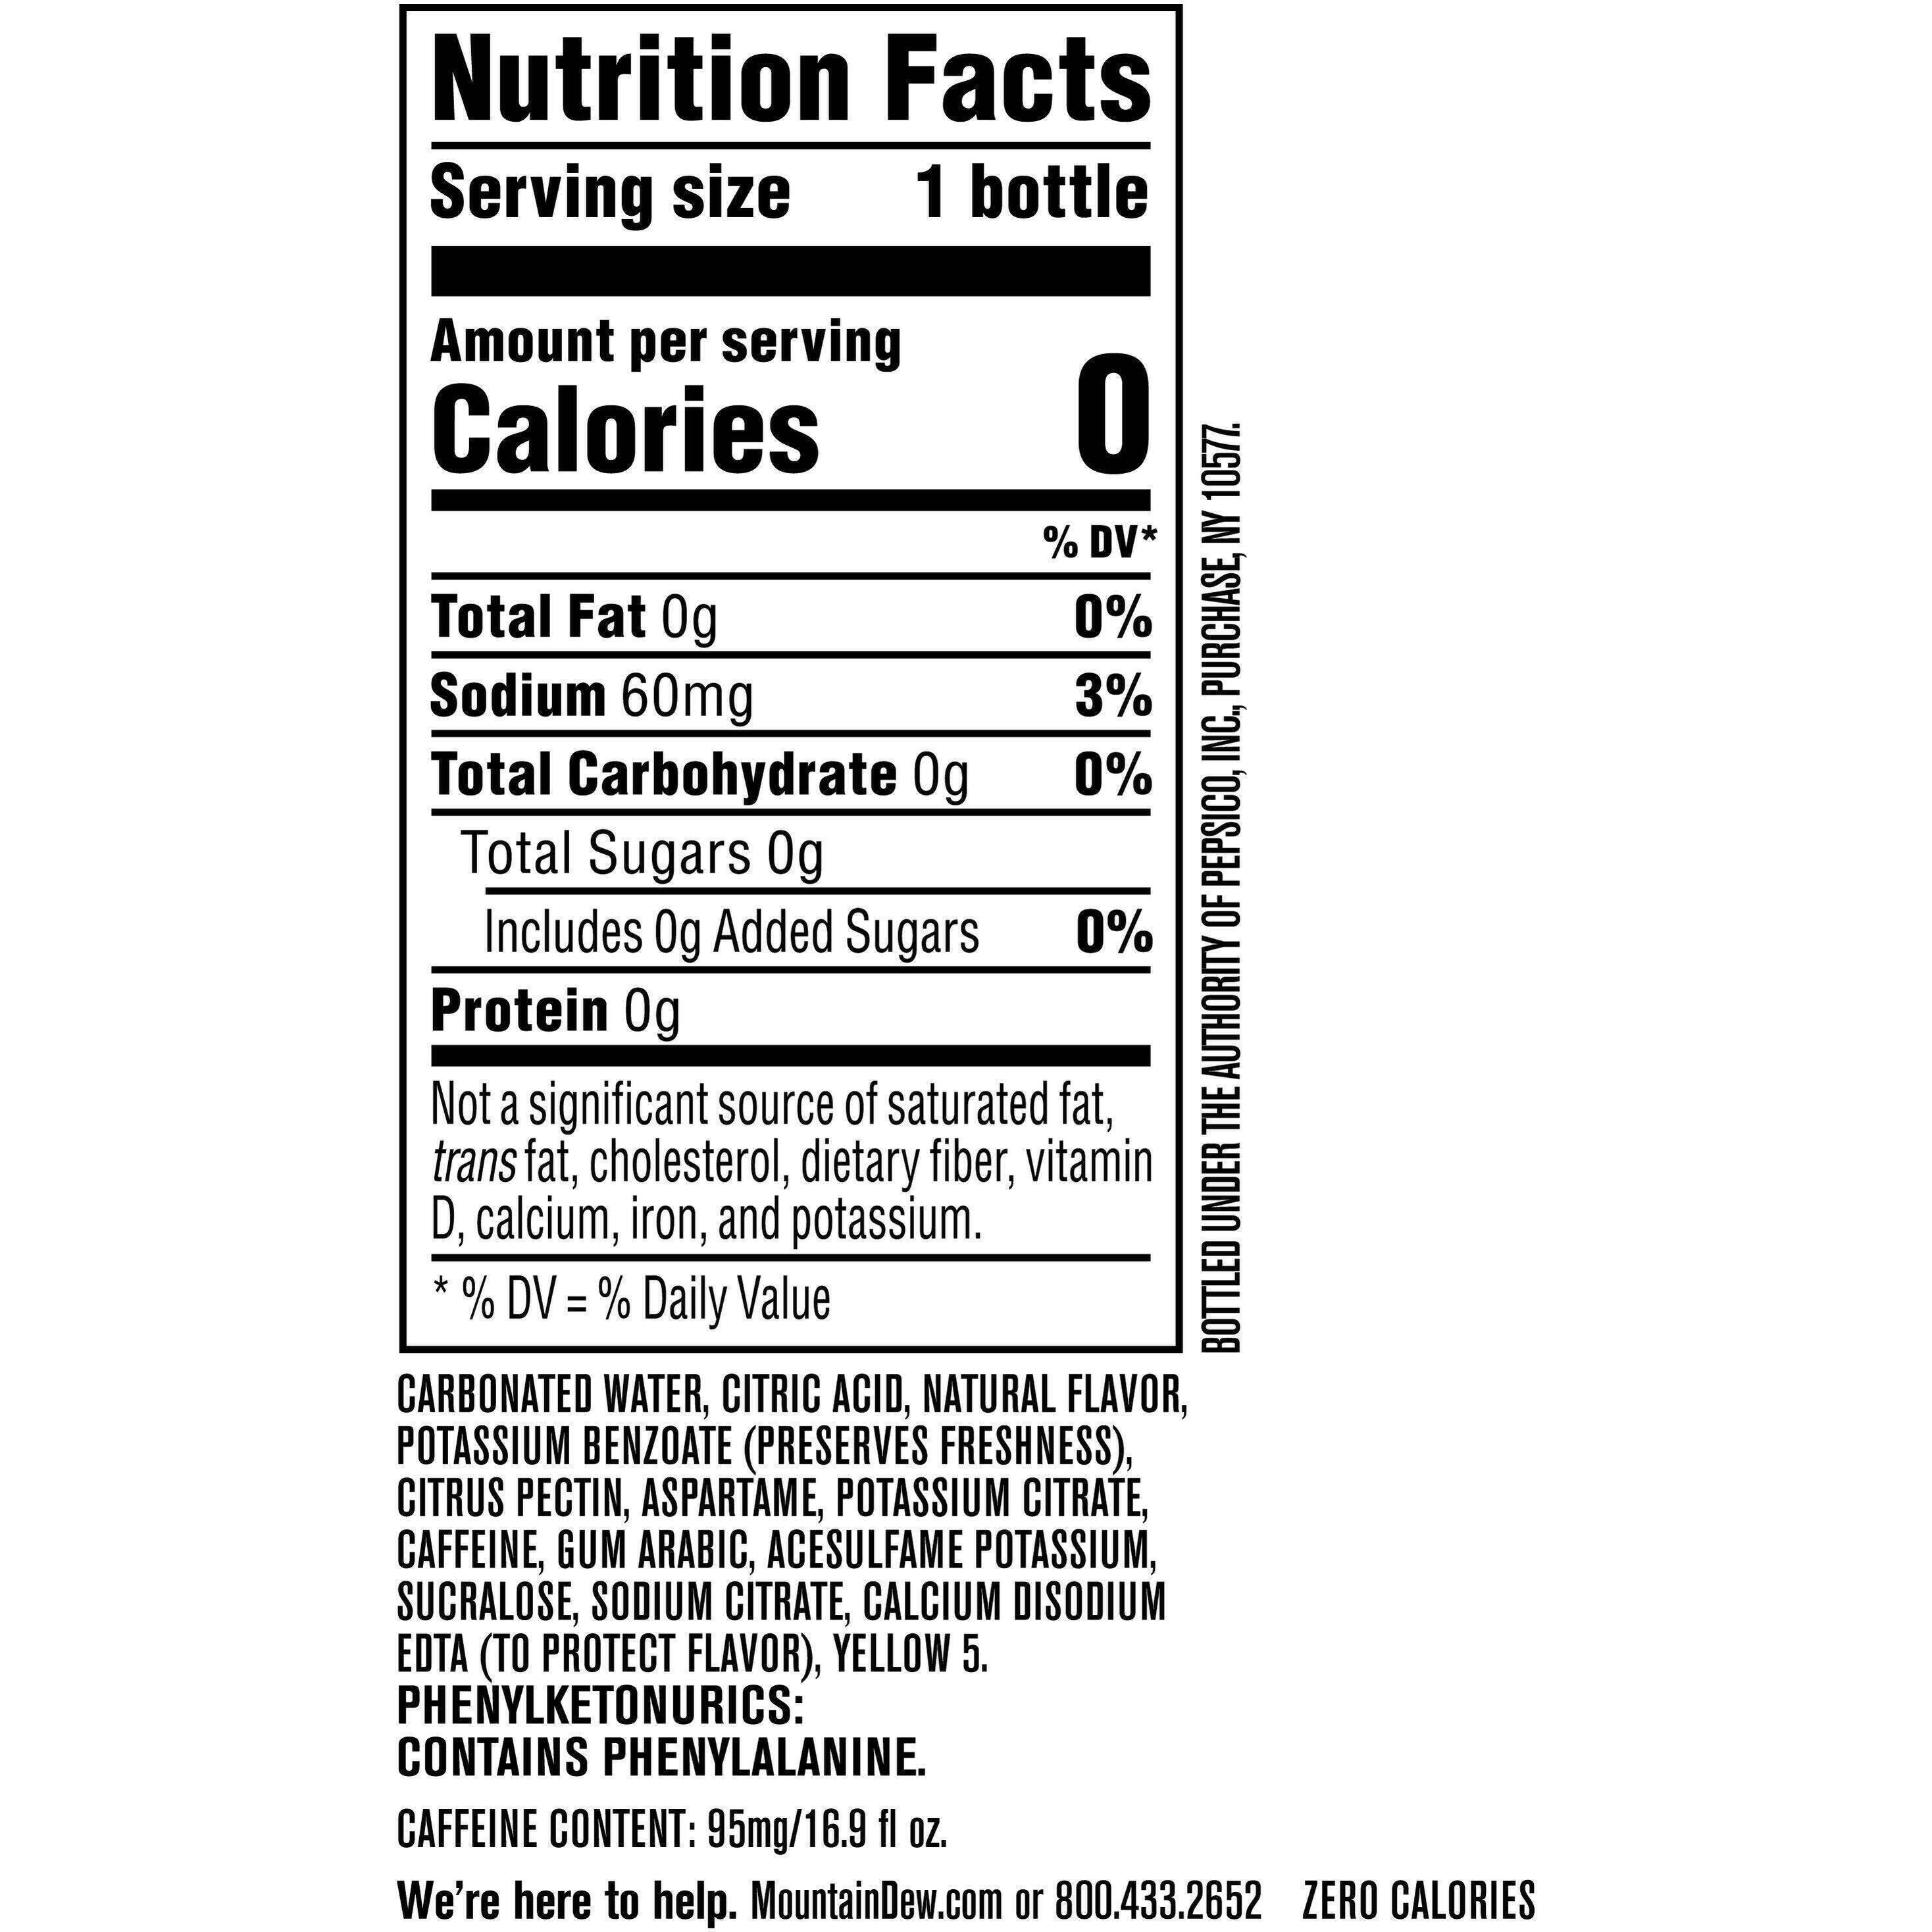 Image describing nutrition information for product Mtn Dew Zero Sugar